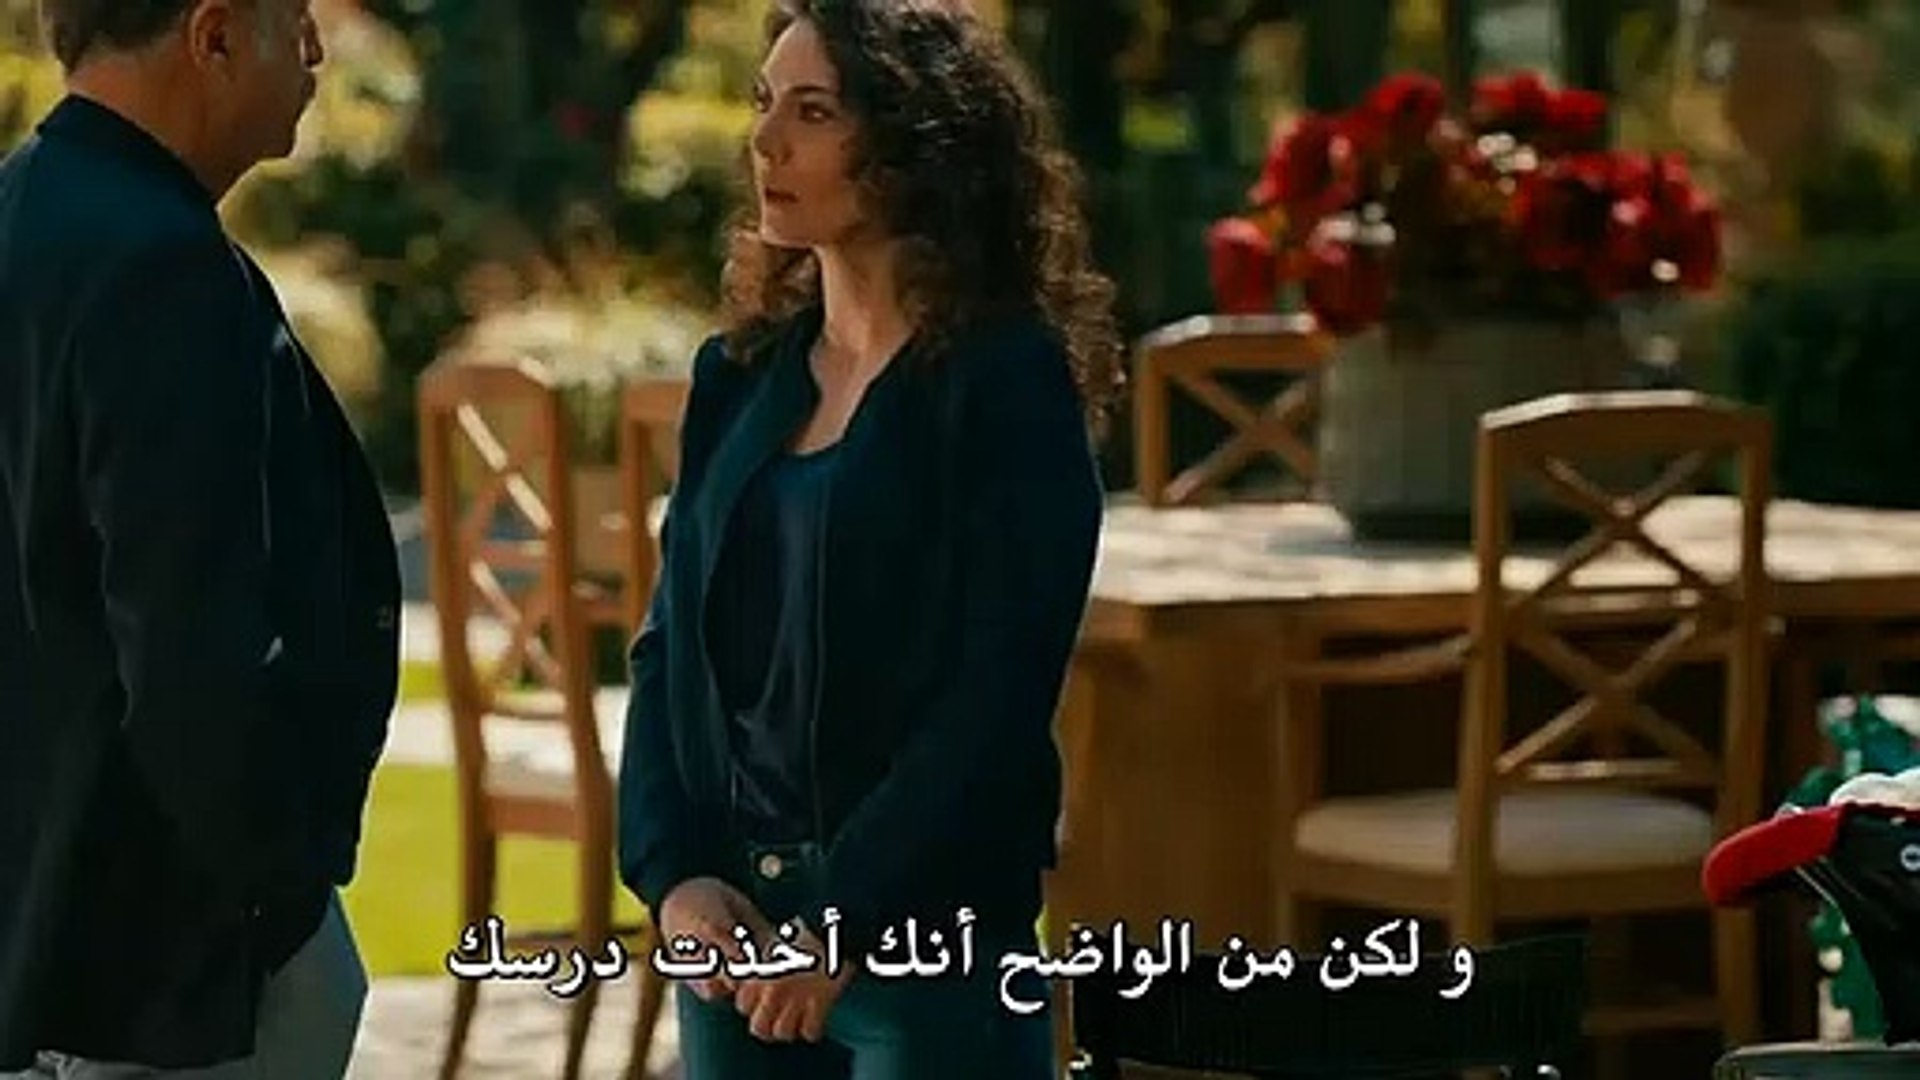 مسلسل جسور و الجميلة مترجم للعربية الحلقة 25 القسم 3 Video Dailymotion